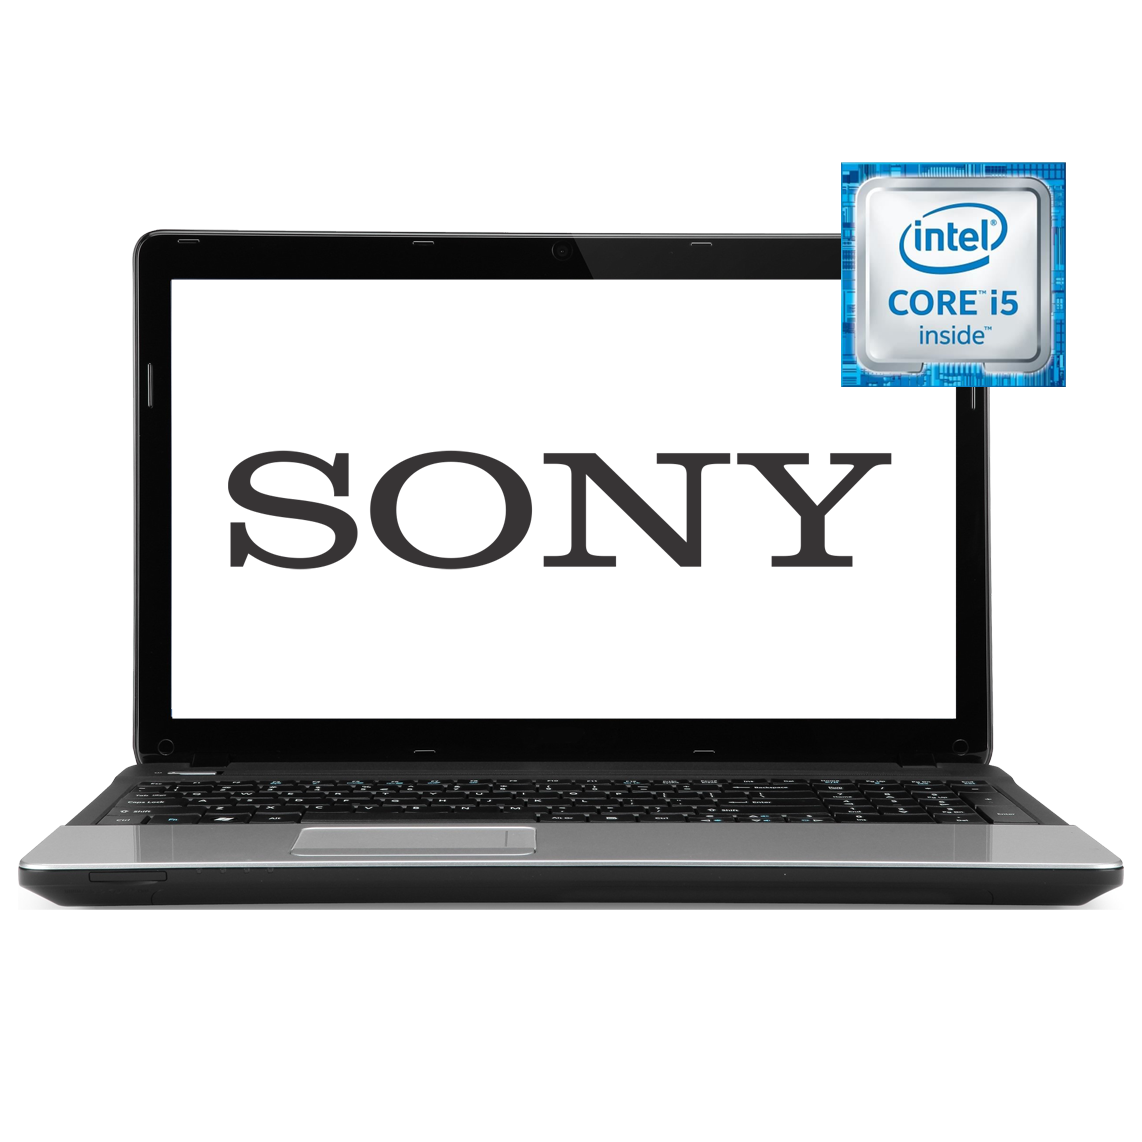 Sony - 15.6 inch Core i5 4th Gen